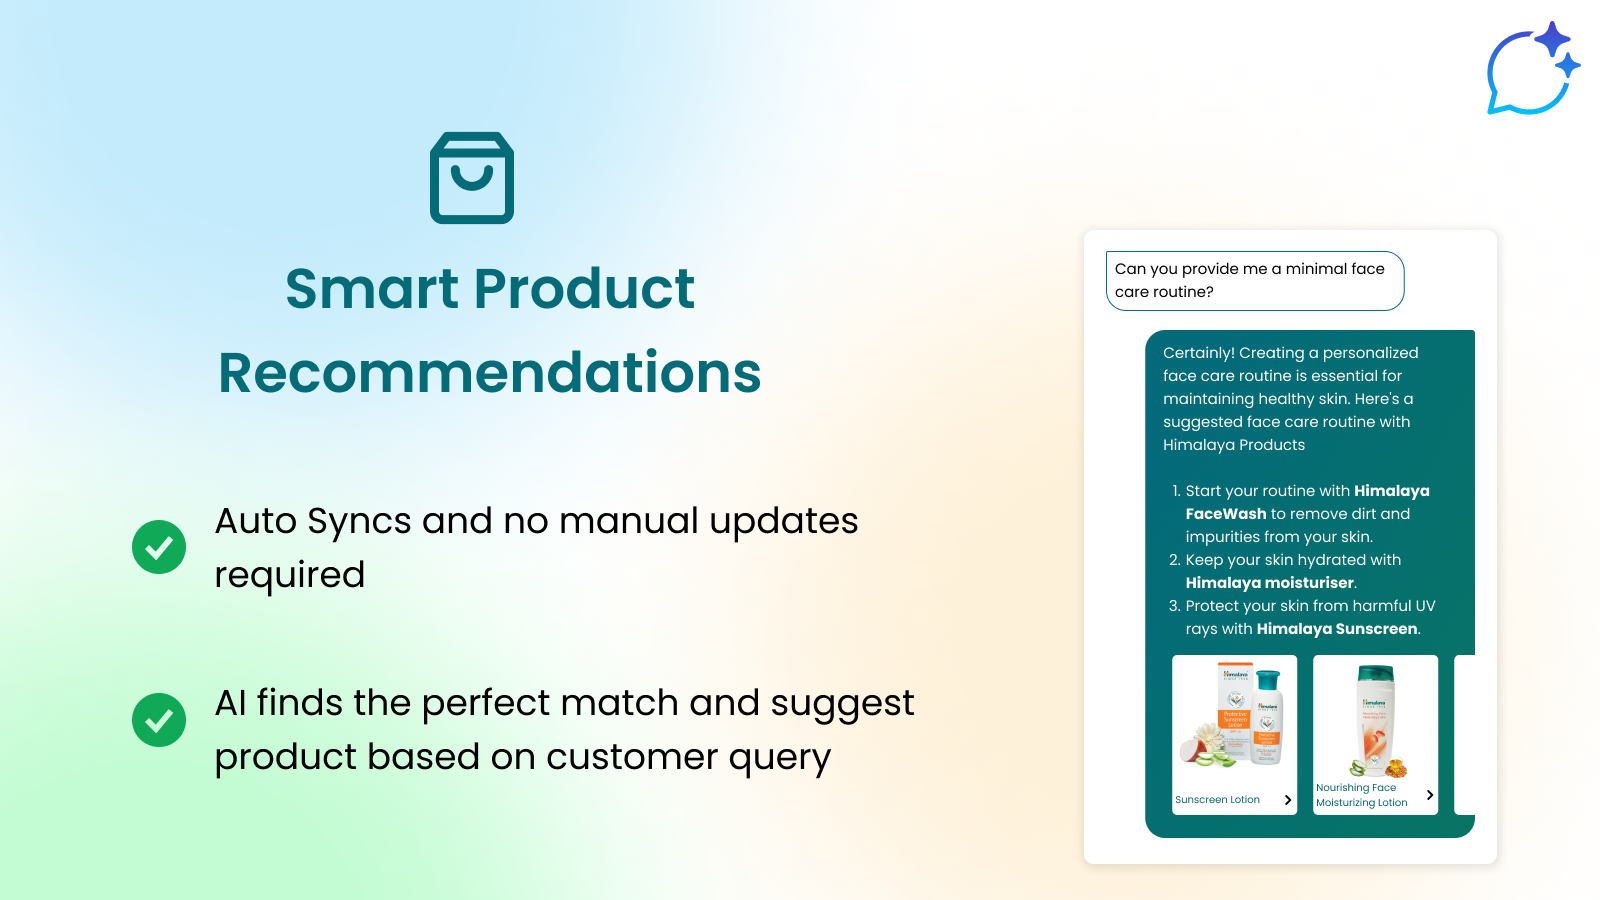 Sincroniza automáticamente tu catálogo y da recomendaciones de productos inteligentes.